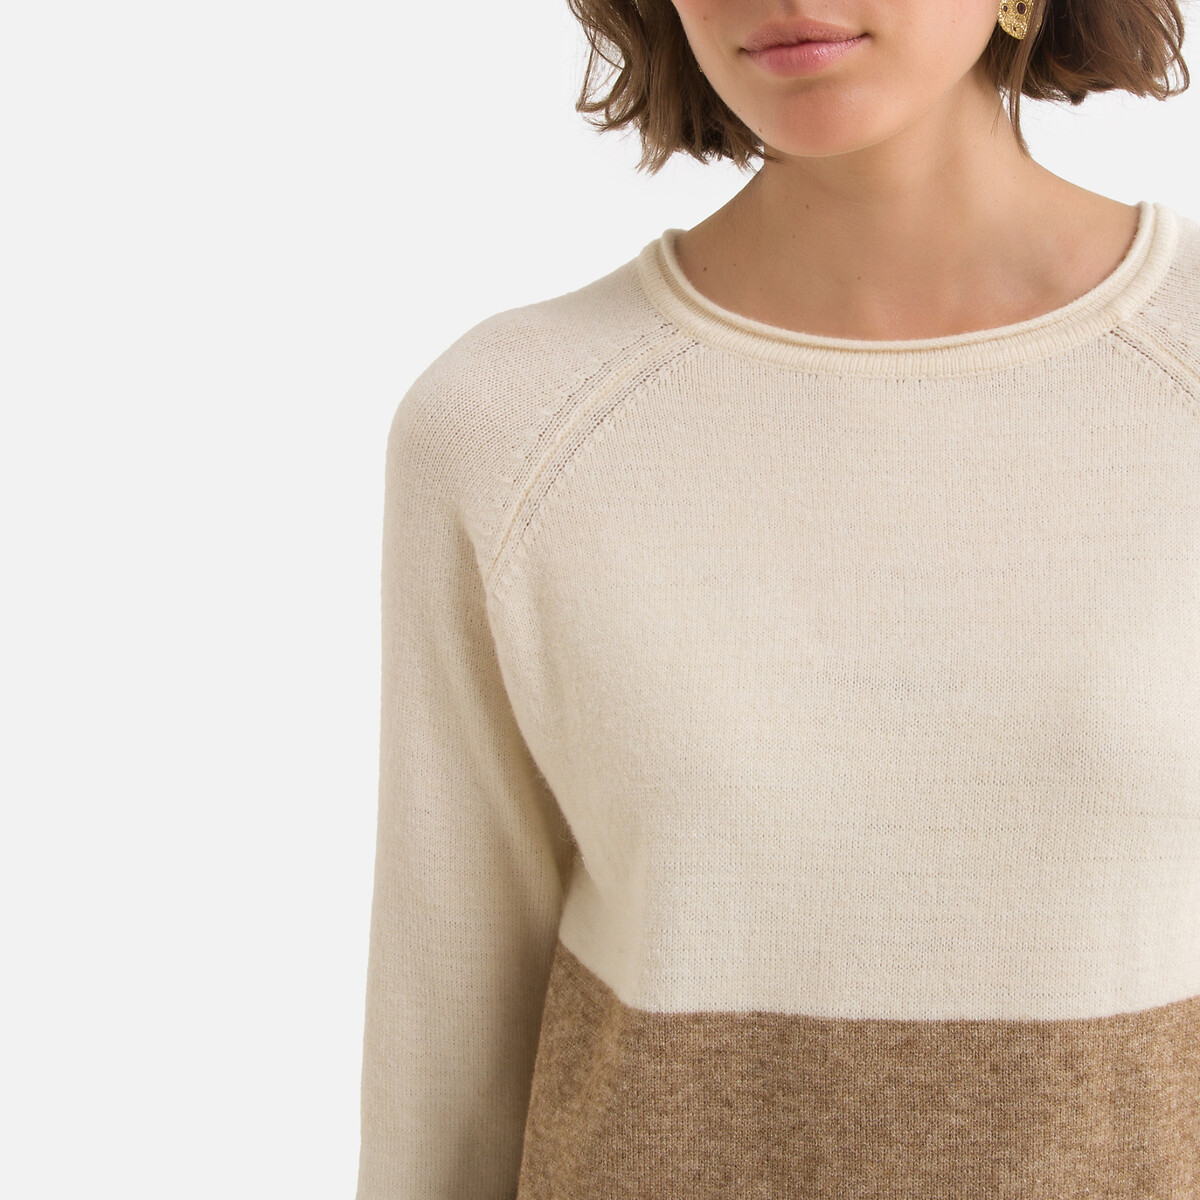 Платье-пуловер LaRedoute Трехцветное из плотного трикотажа S бежевый, размер S - фото 3